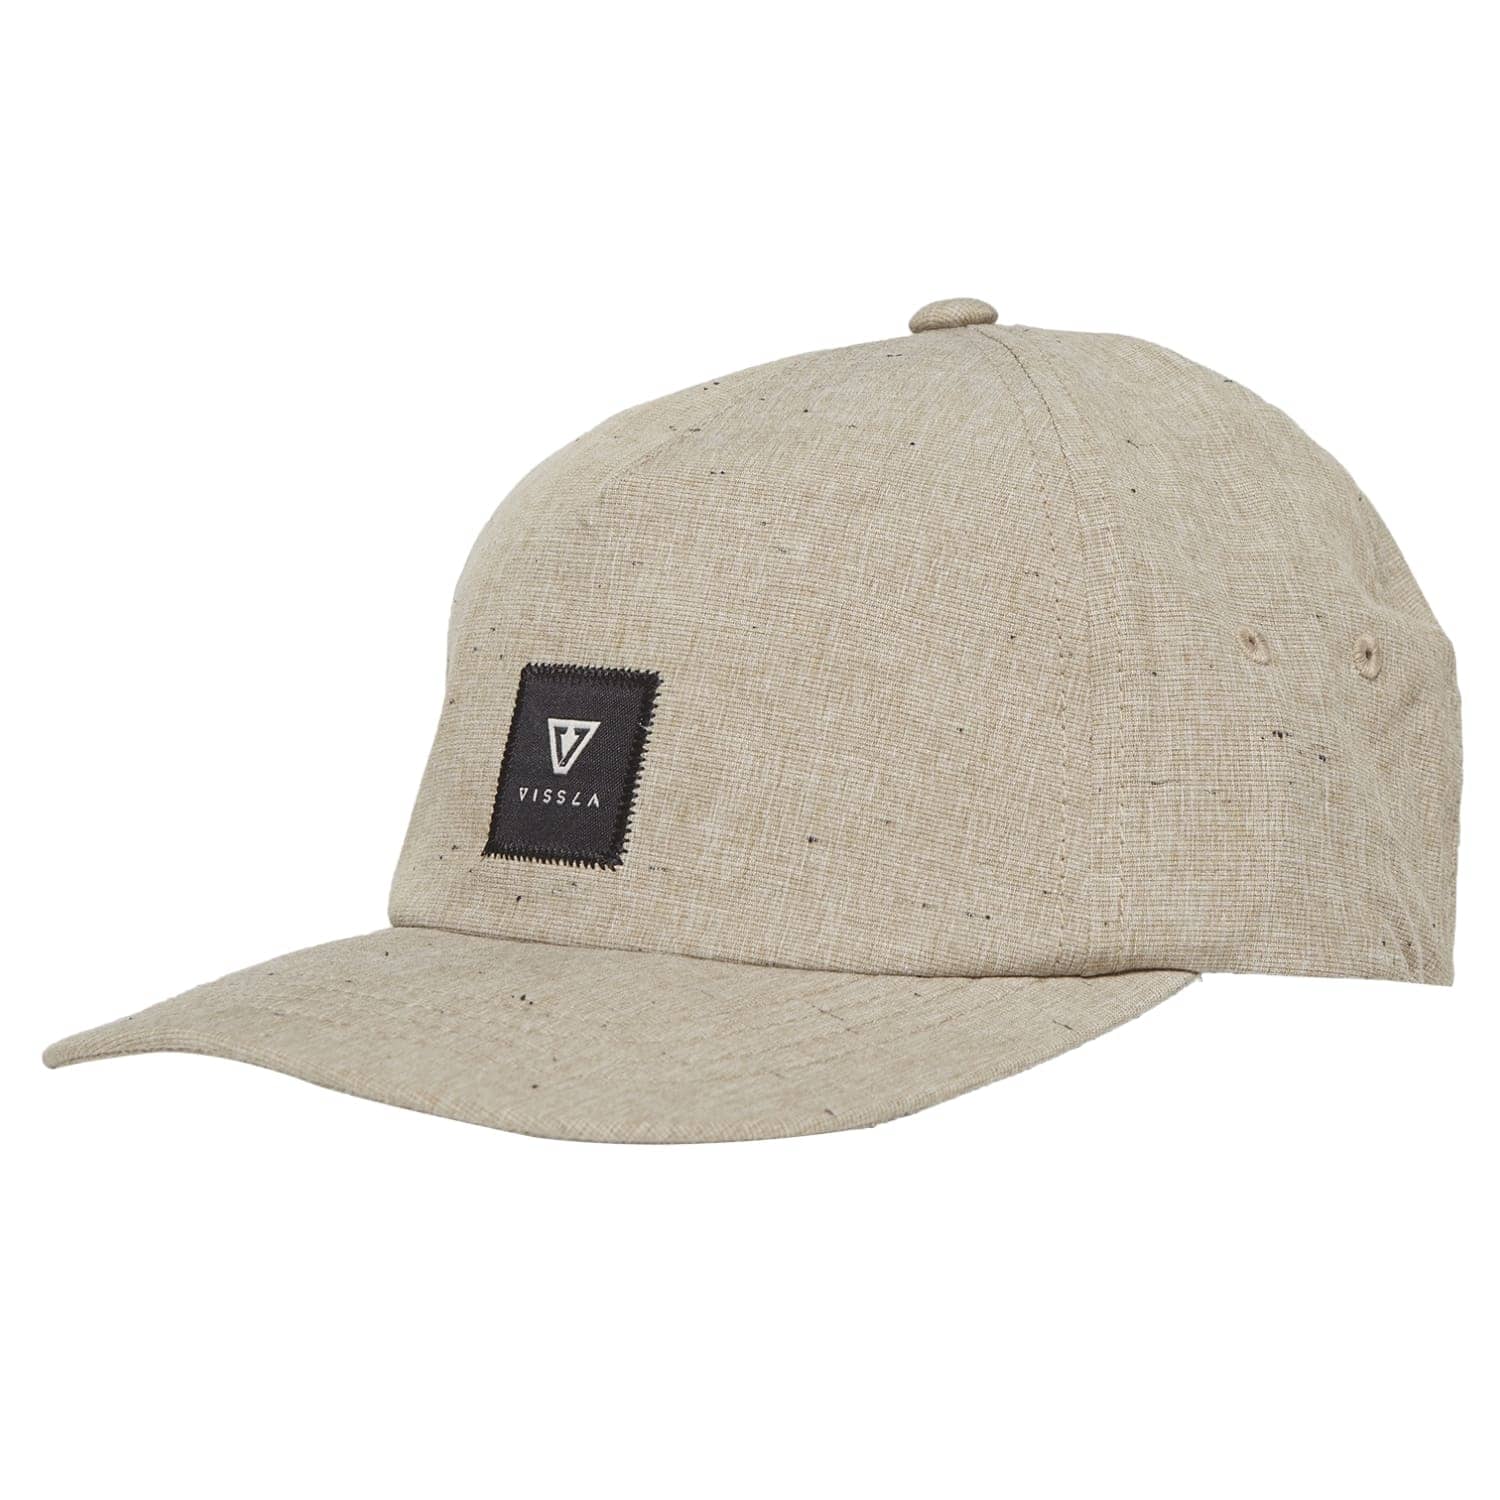 Vissla Lay Day Eco Hat Khaki O/S (one size) - Baseball Cap by Vissla